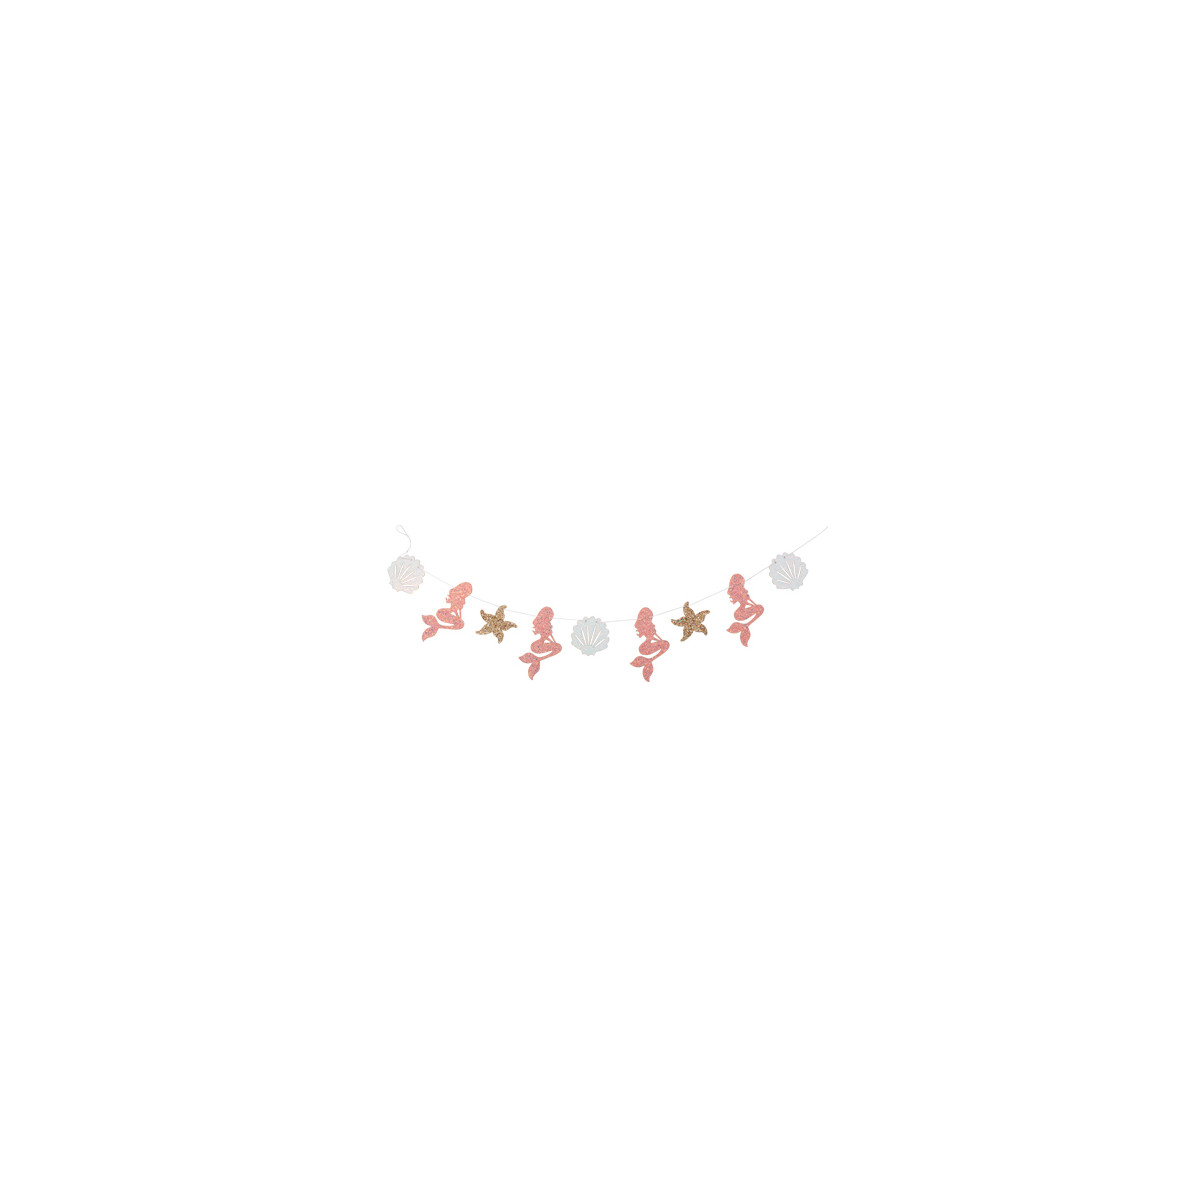 Guirlande sirène blanche rose et or - 1.60m